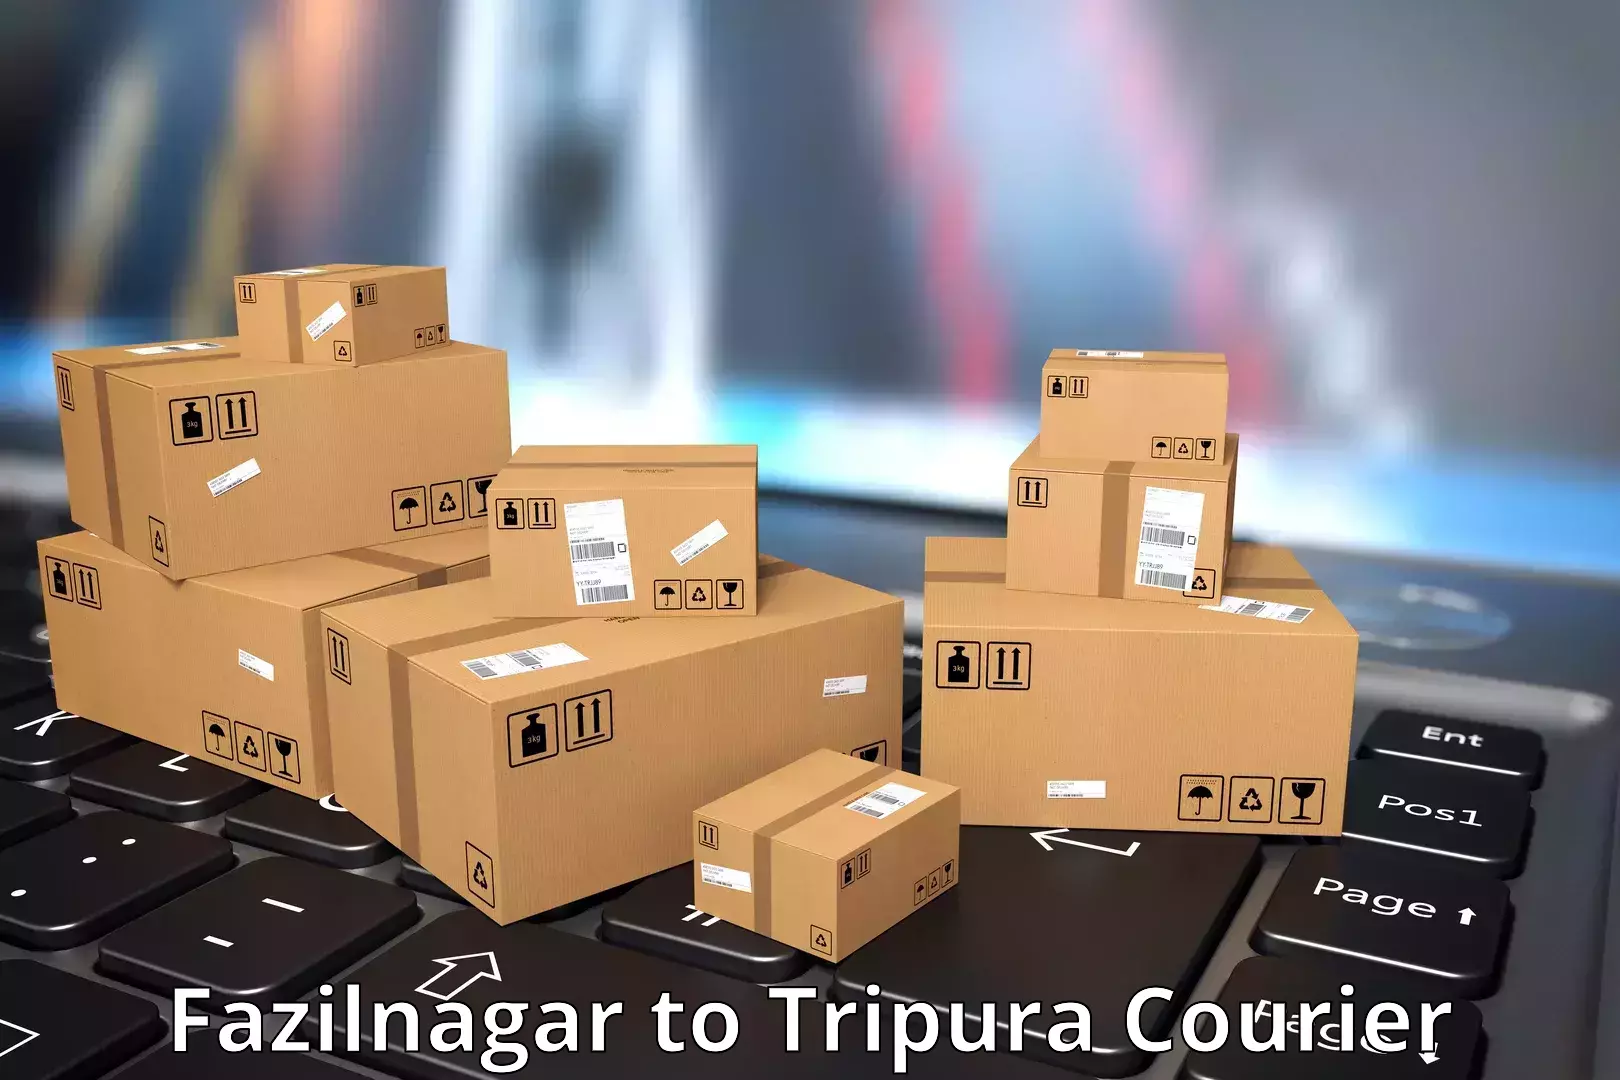 Affordable shipping solutions Fazilnagar to IIIT Agartala